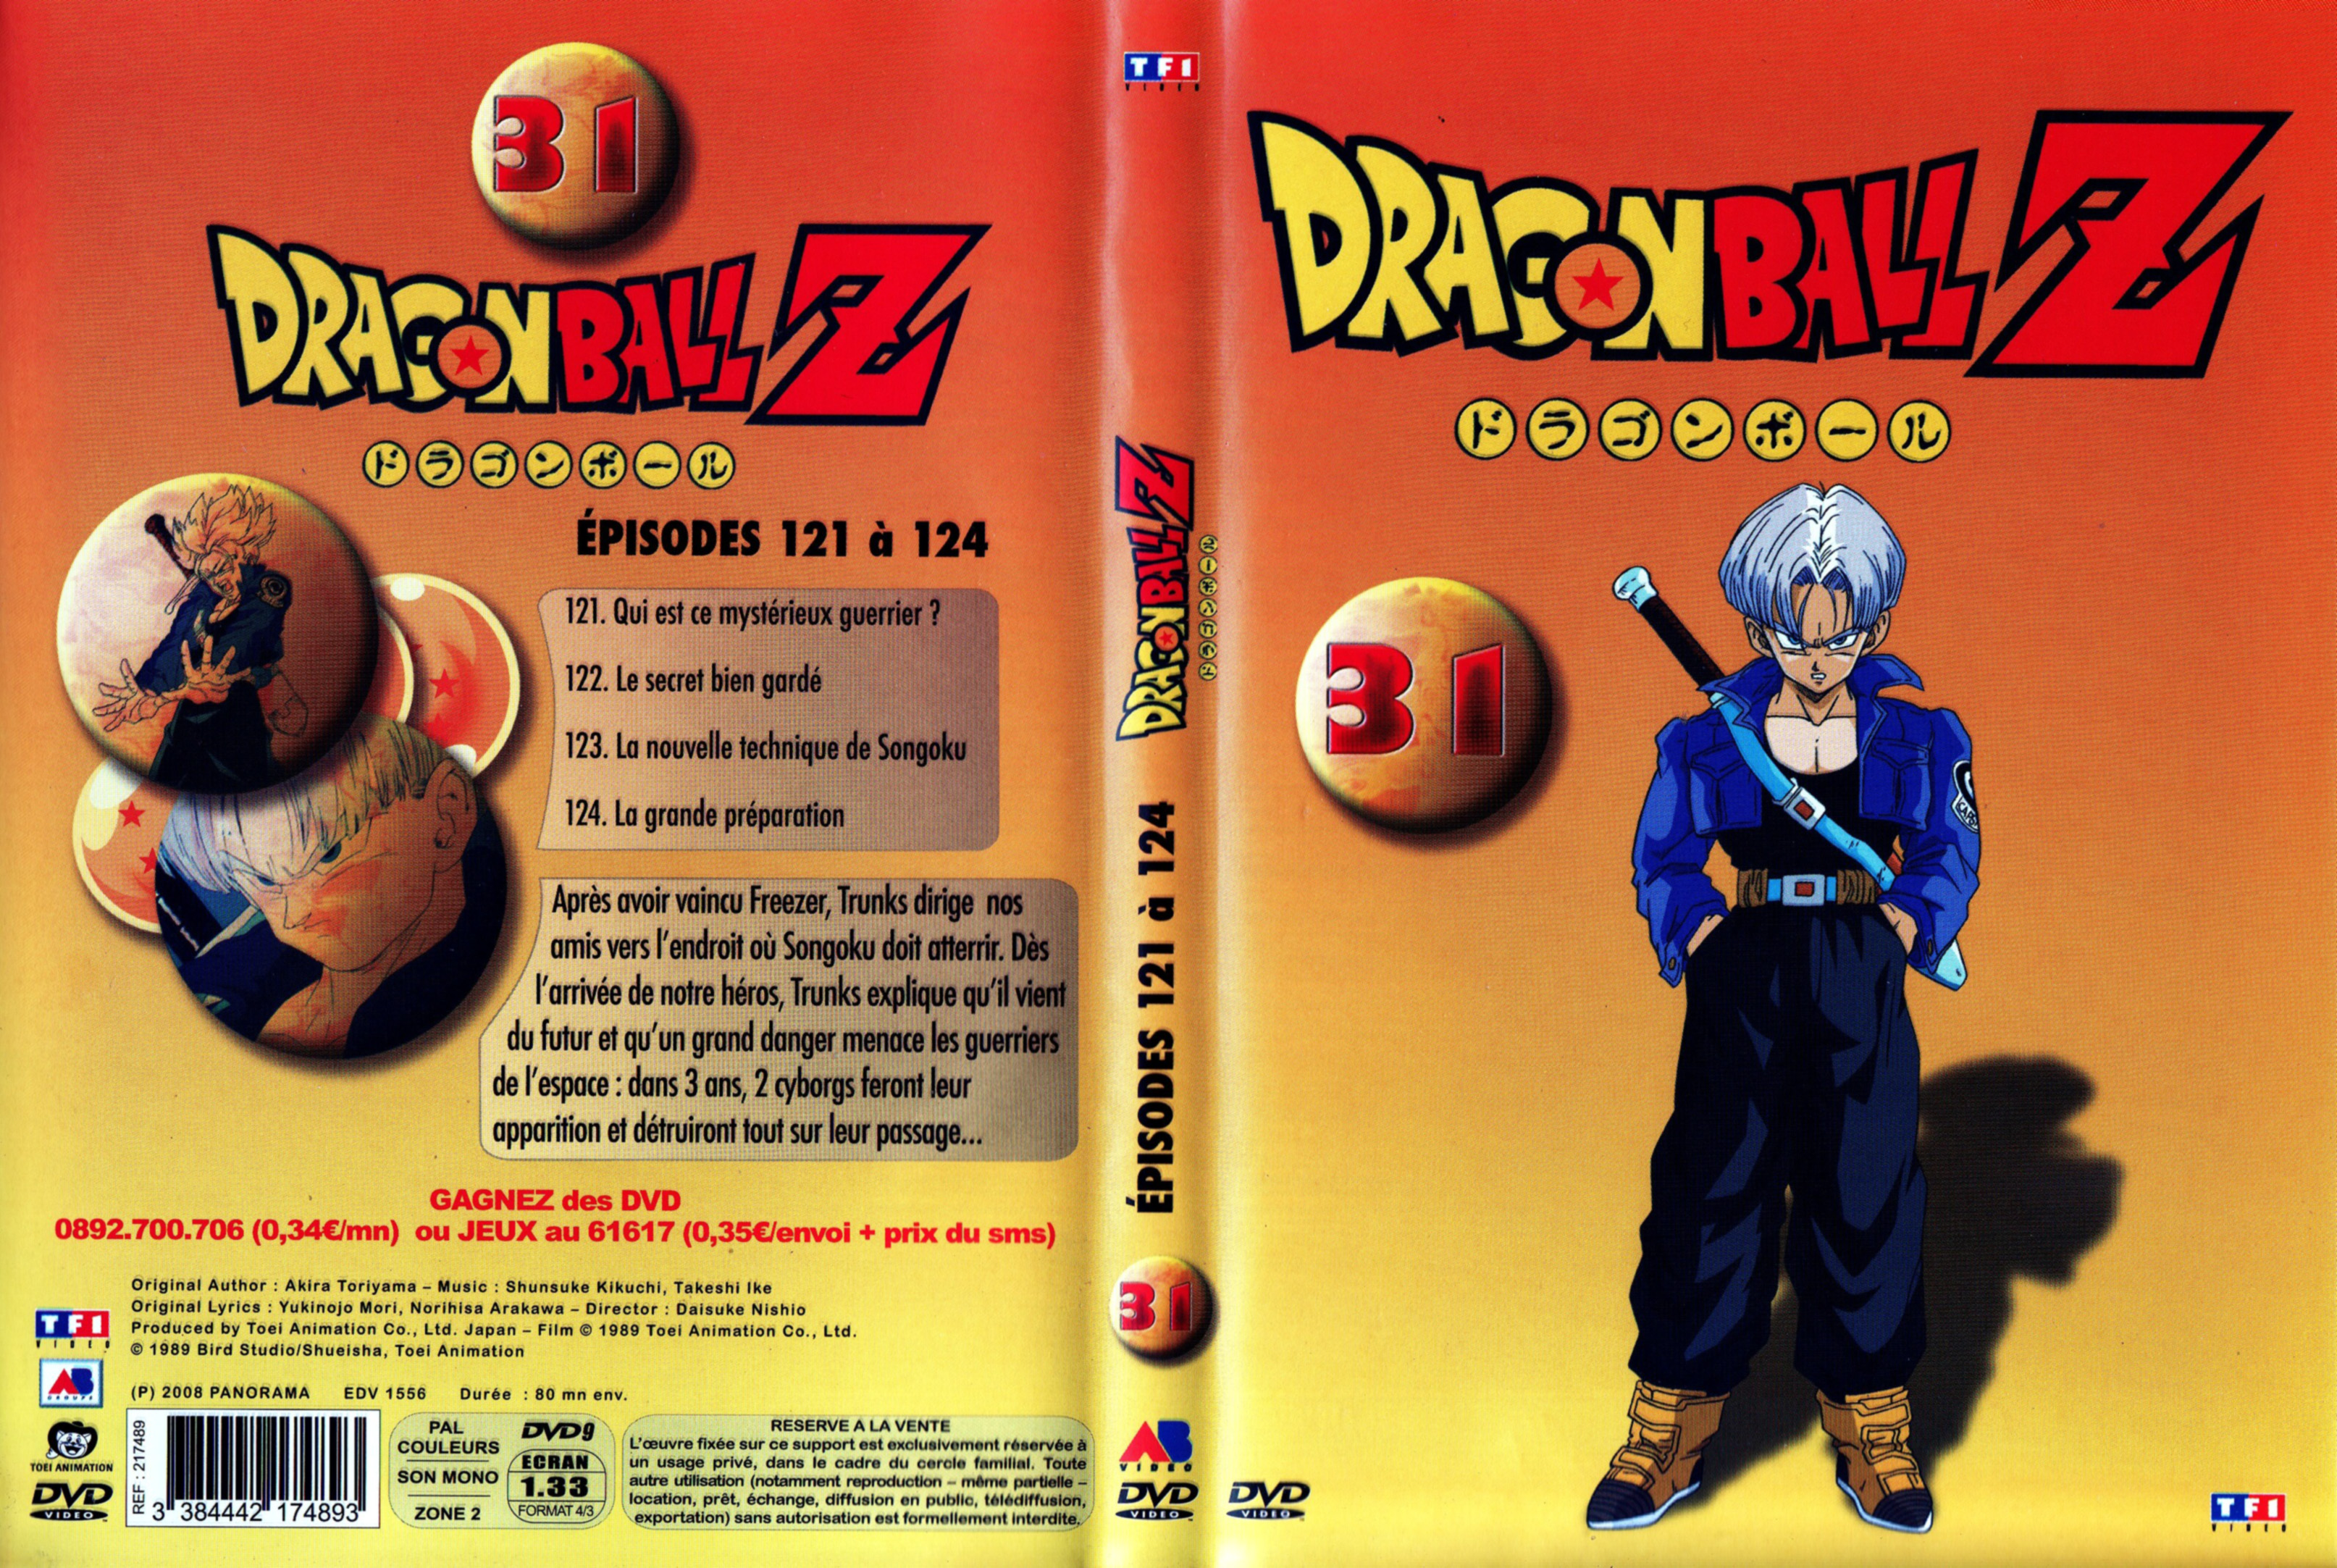 Jaquette DVD Dragon Ball Z vol 31 v3